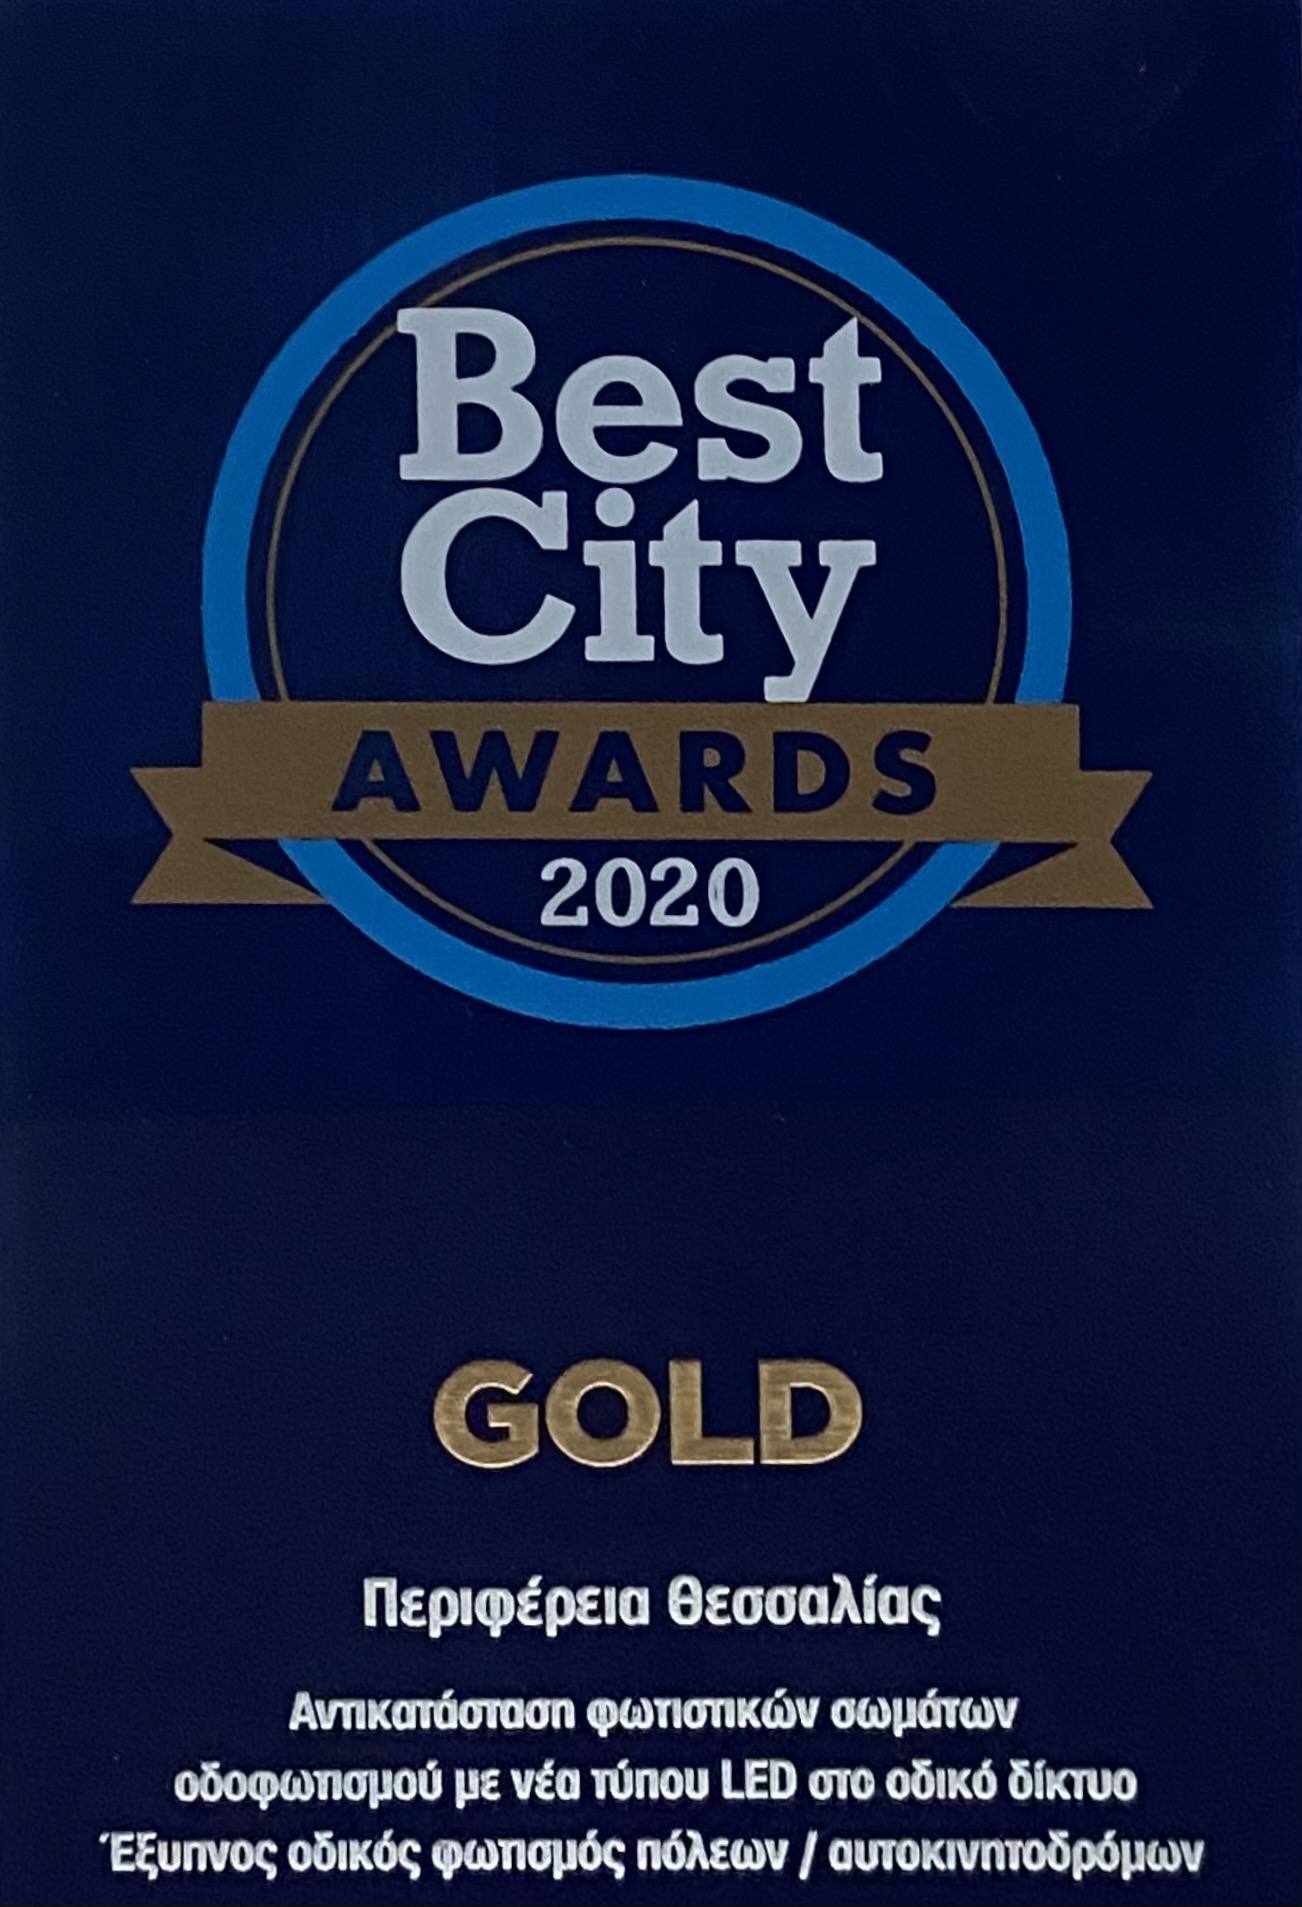 Διπλή βράβευση για την Περιφέρεια Θεσσαλίας στα Best City Awards 2020  